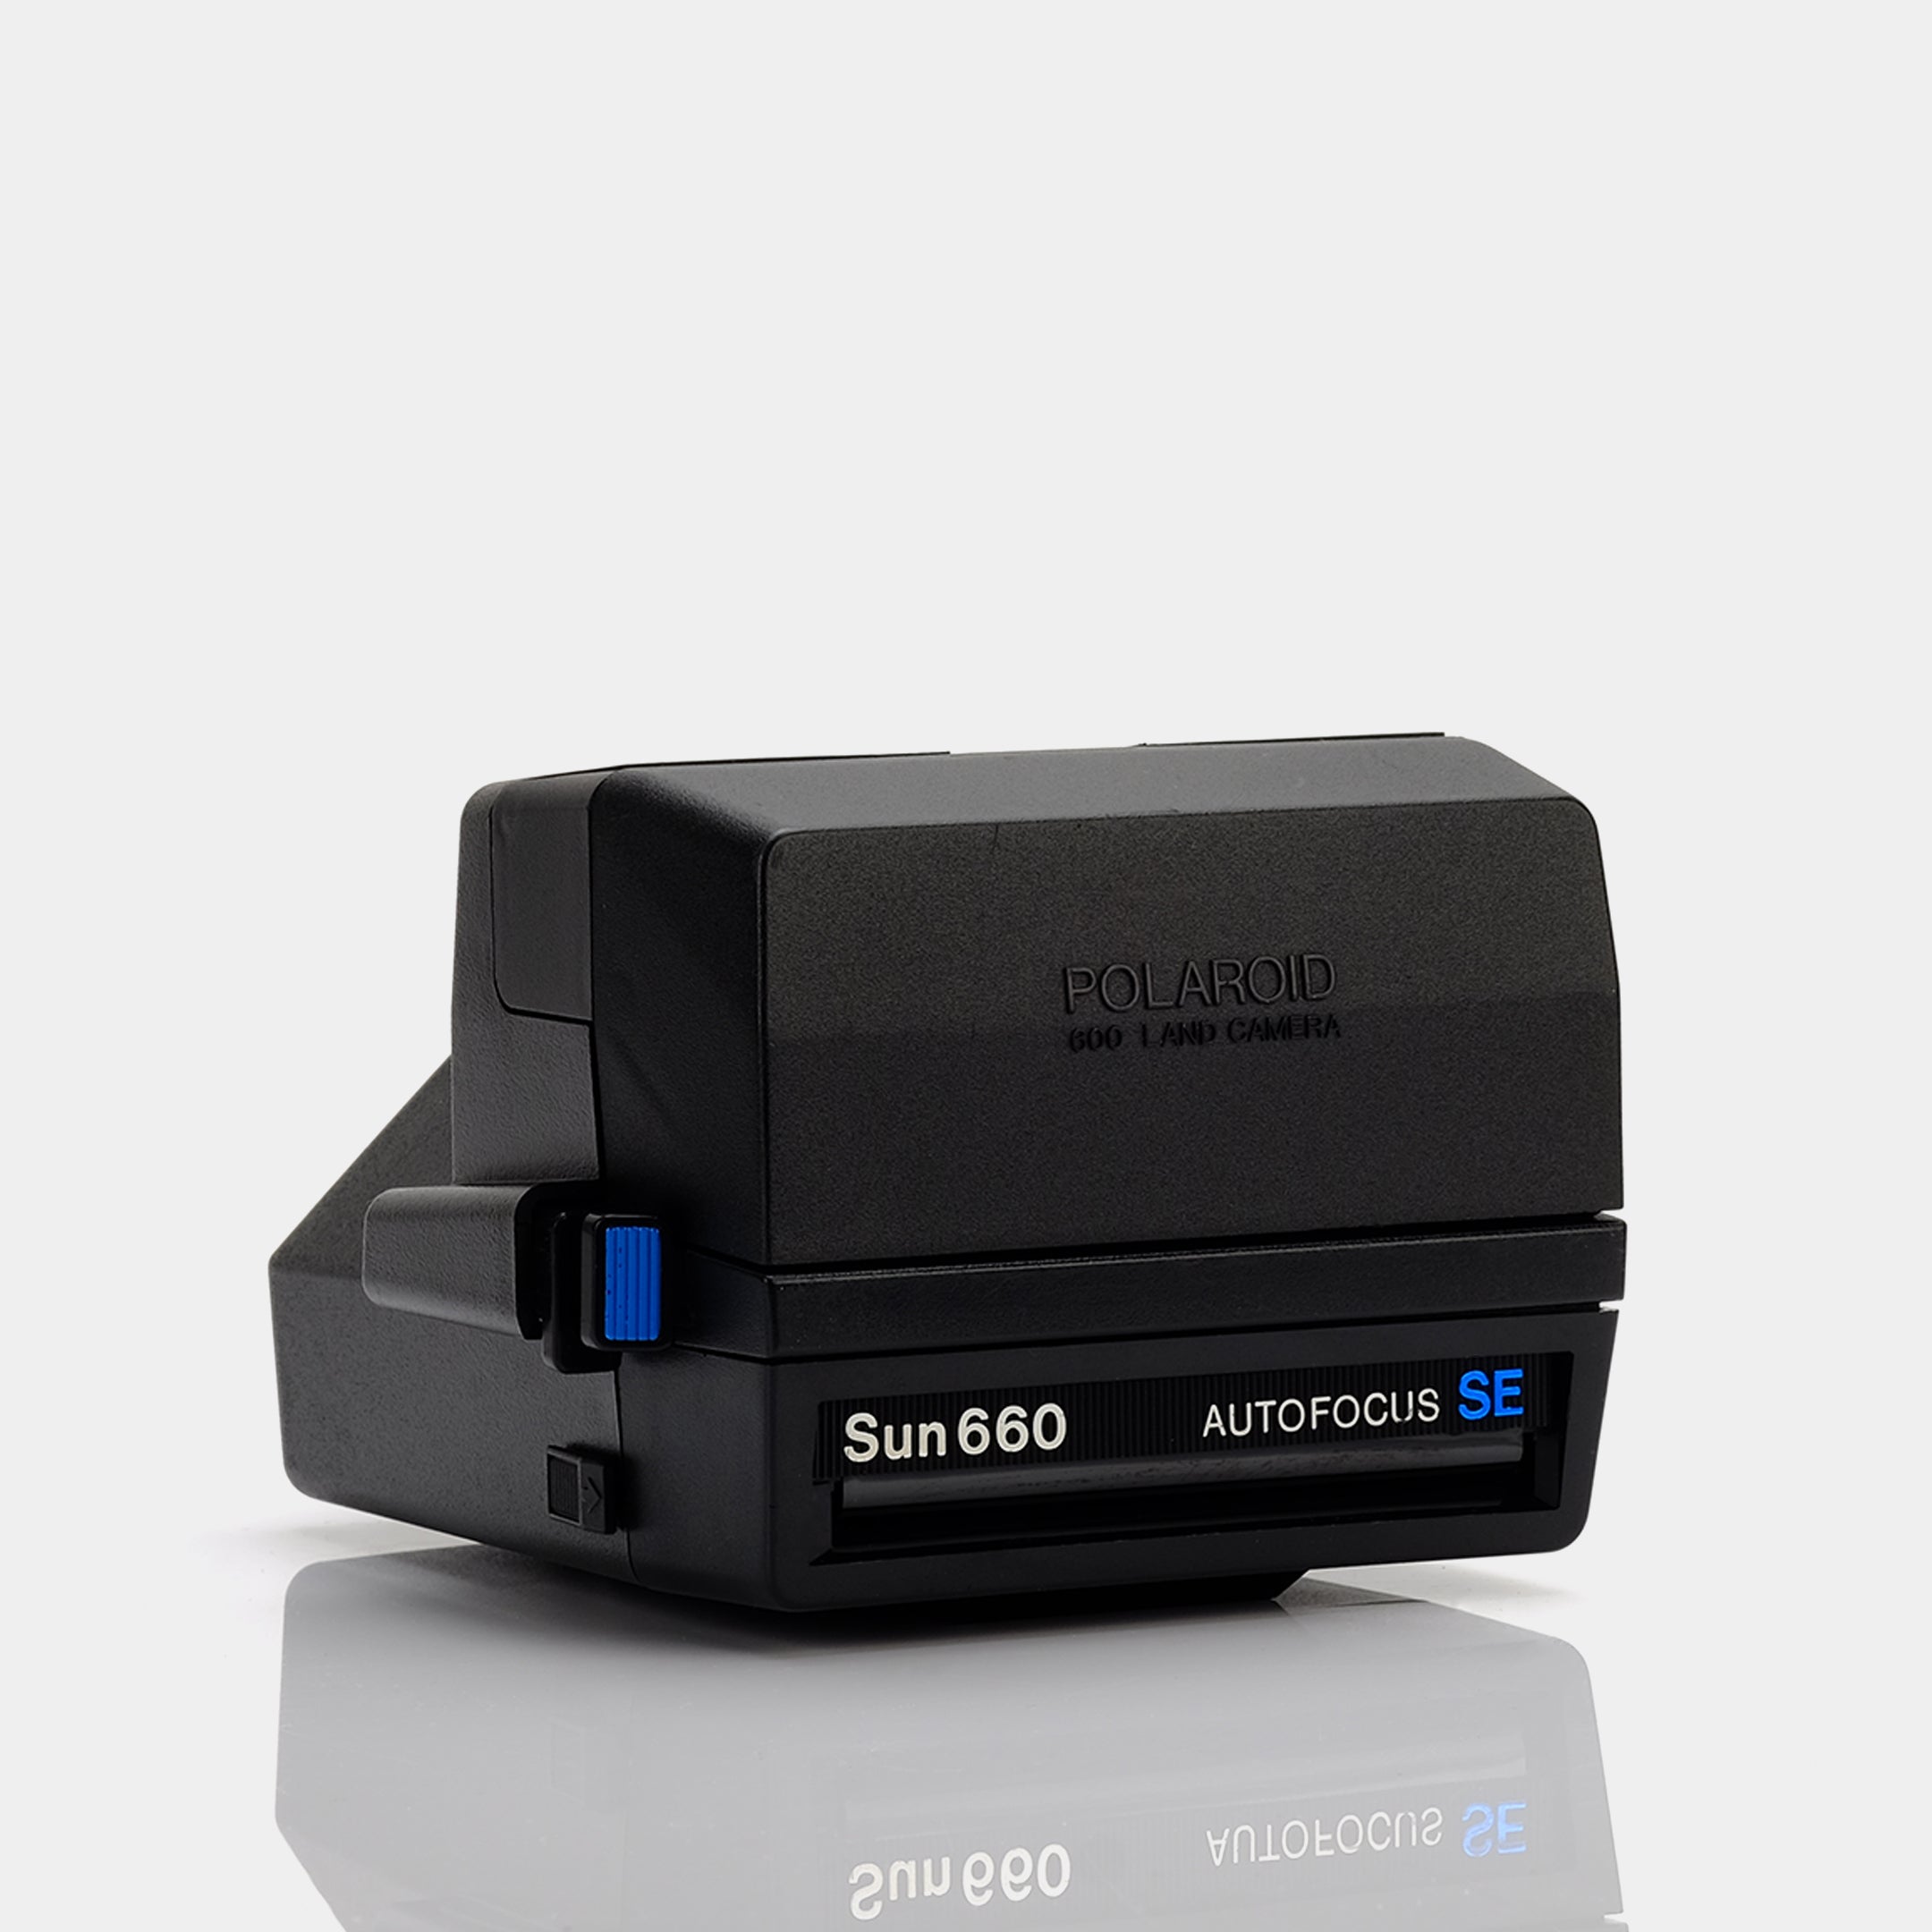 Polaroid 600 Sun660 Autofocus SE Instant Film Camera